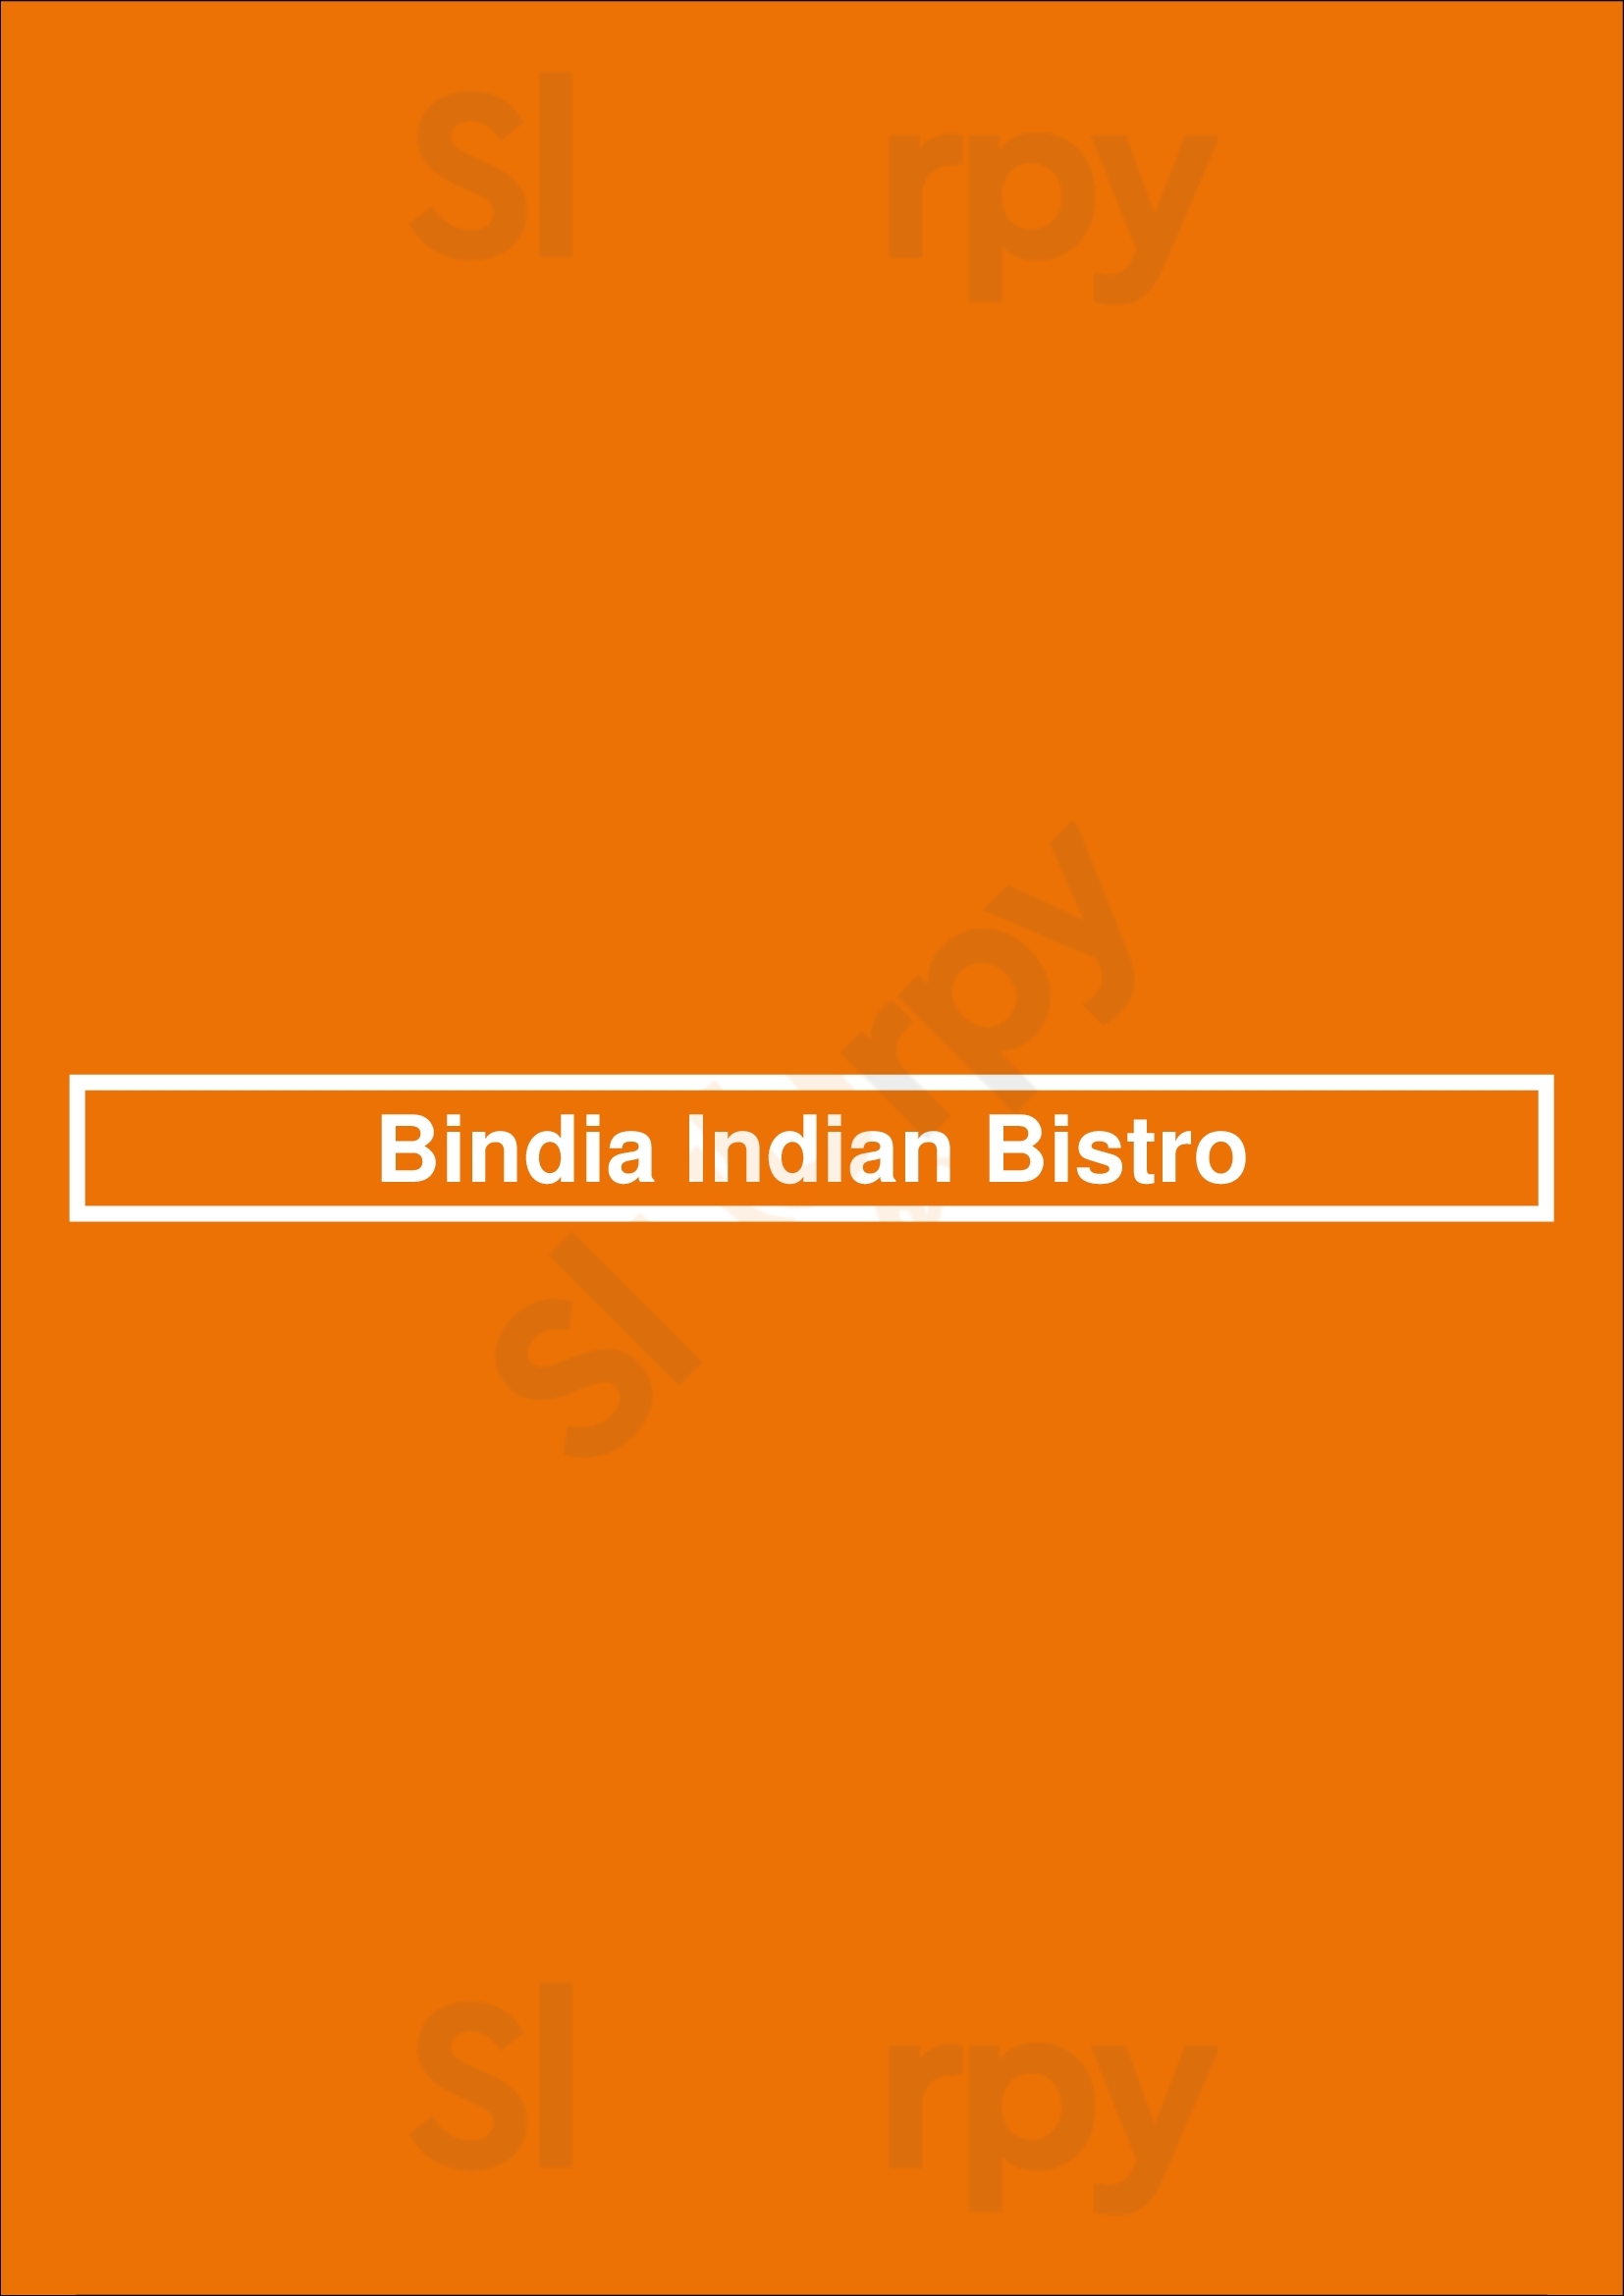 Bindia Indian Bistro Toronto Menu - 1